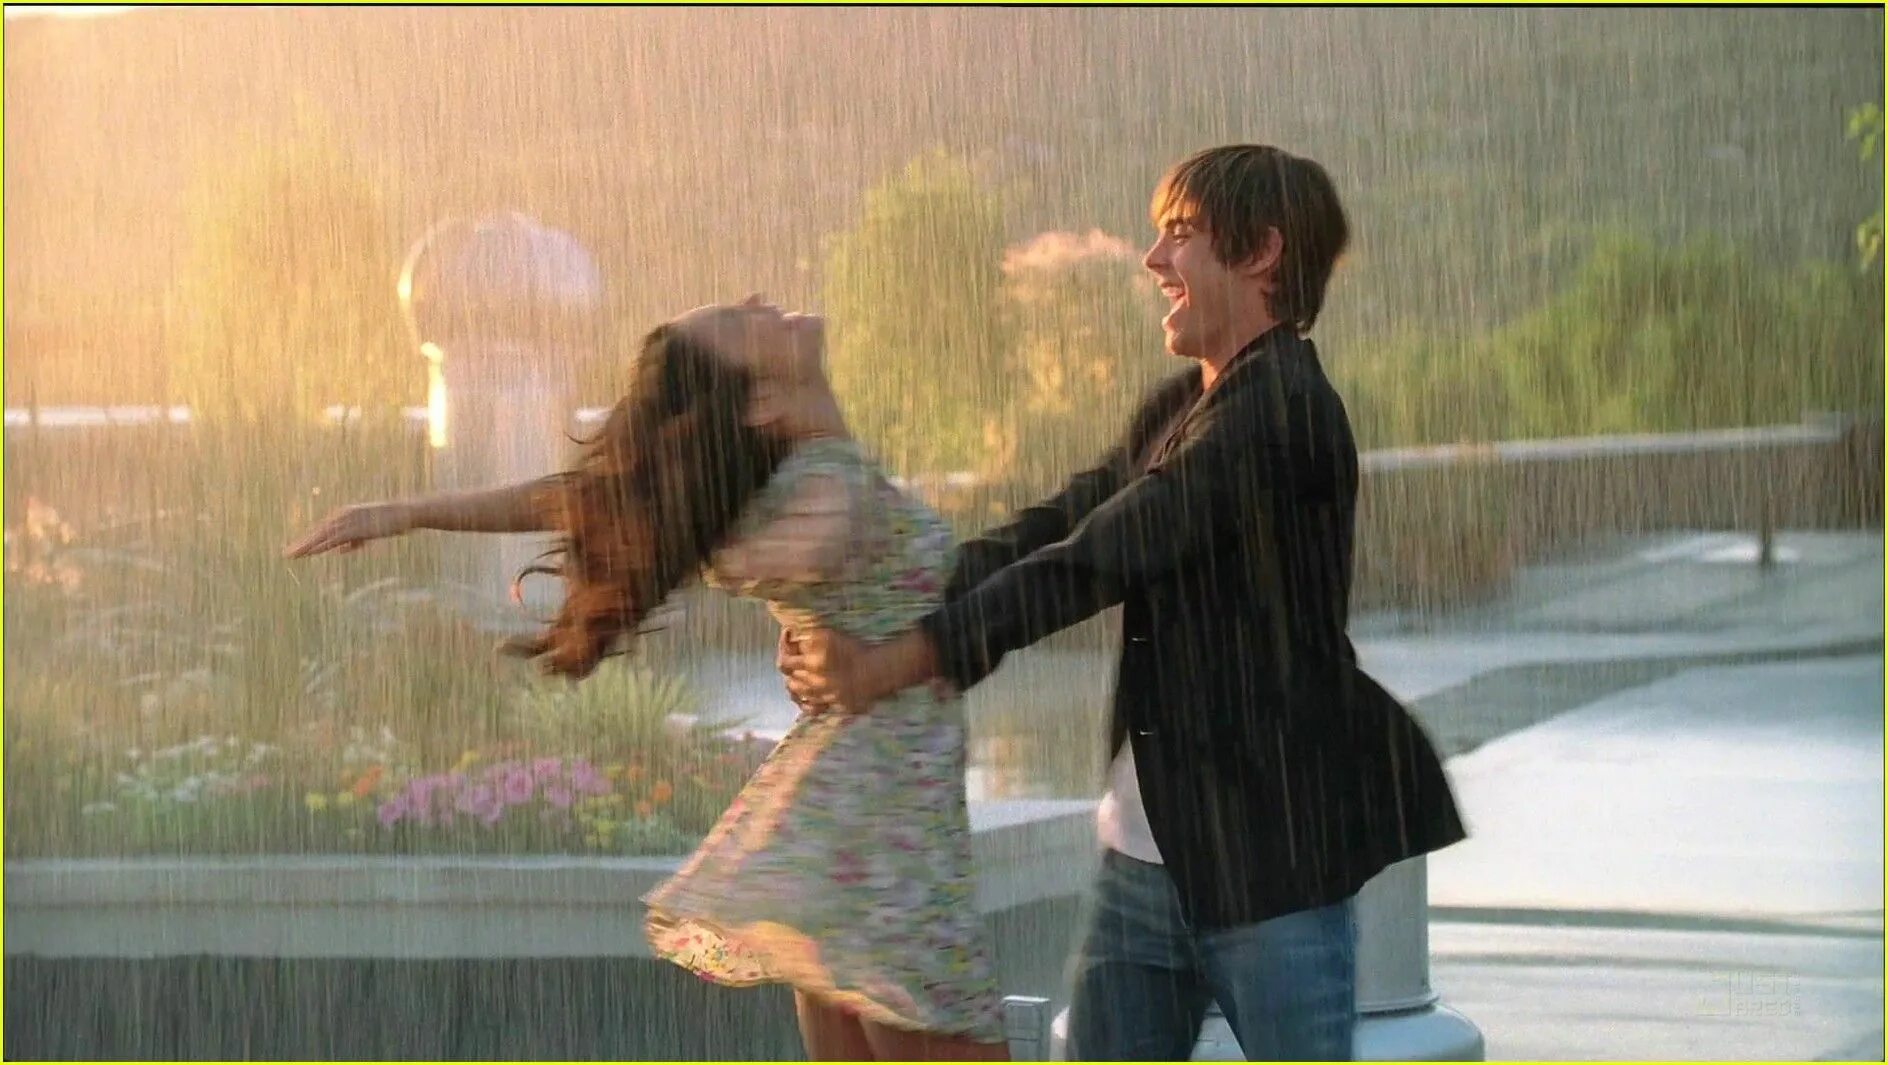 Песня ни капли души. Вивиан Грин танцевать под дождём. Влюблённые под дождём. Прогулка вдвоем под дождем. Пара танцует под дождем.